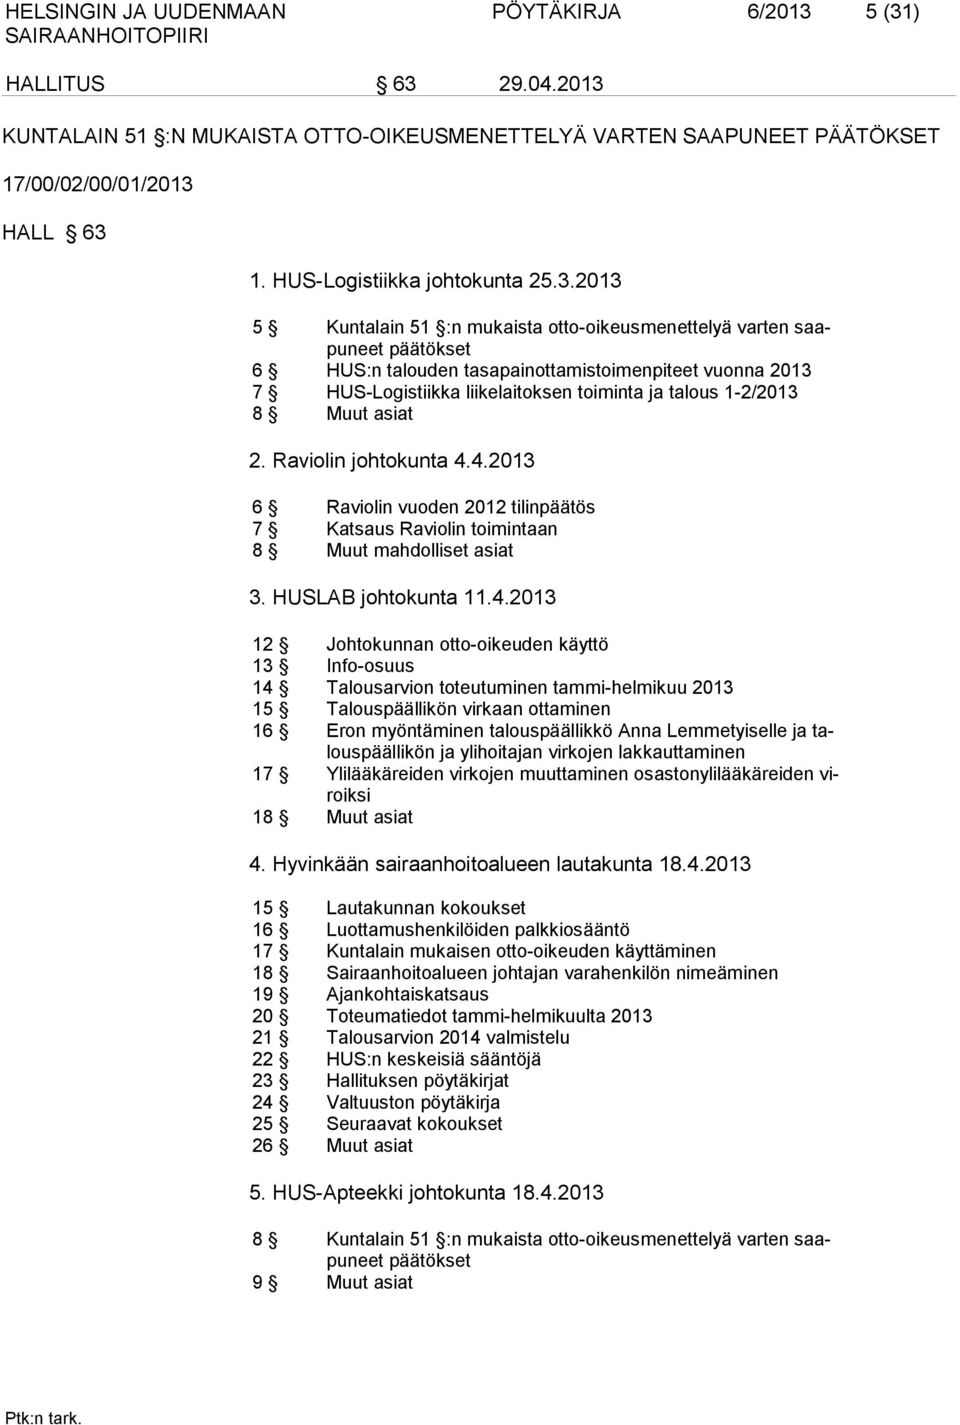 2013 5 Kuntalain 51 :n mukaista otto-oikeusmenettelyä varten saapuneet päätökset 6 HUS:n talouden tasapainottamistoimenpiteet vuonna 2013 7 HUS-Logistiikka liikelaitoksen toiminta ja talous 1-2/2013